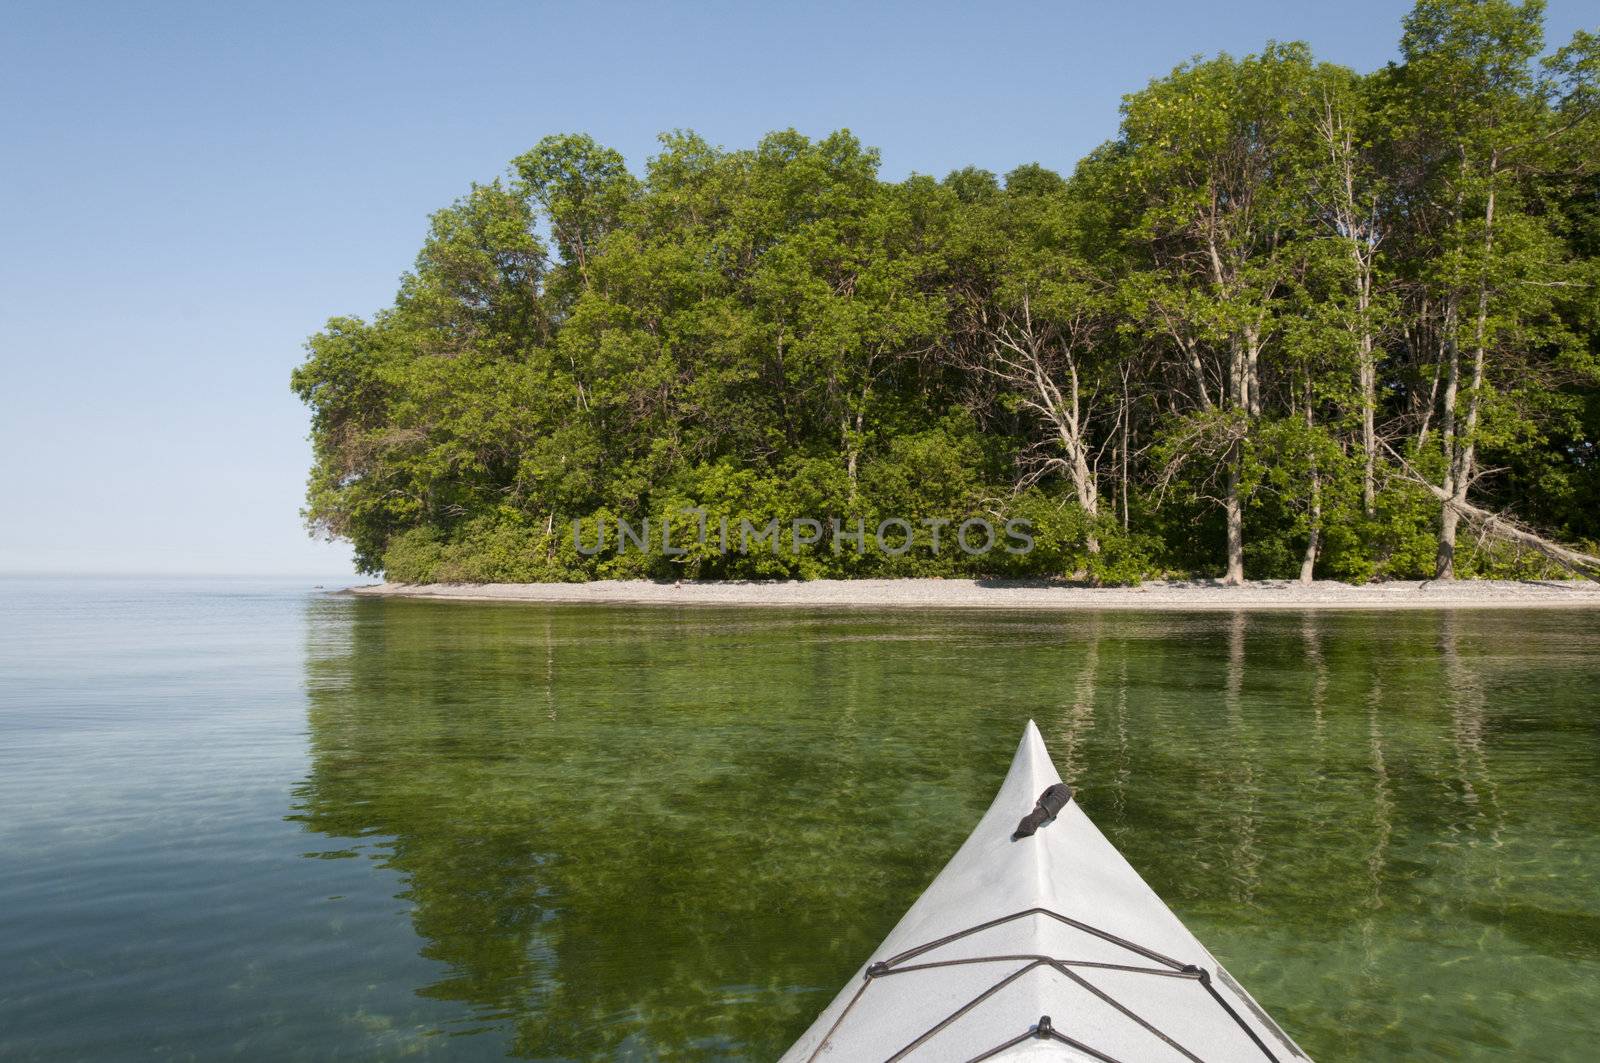 Kayak on the Lake by Gordo25